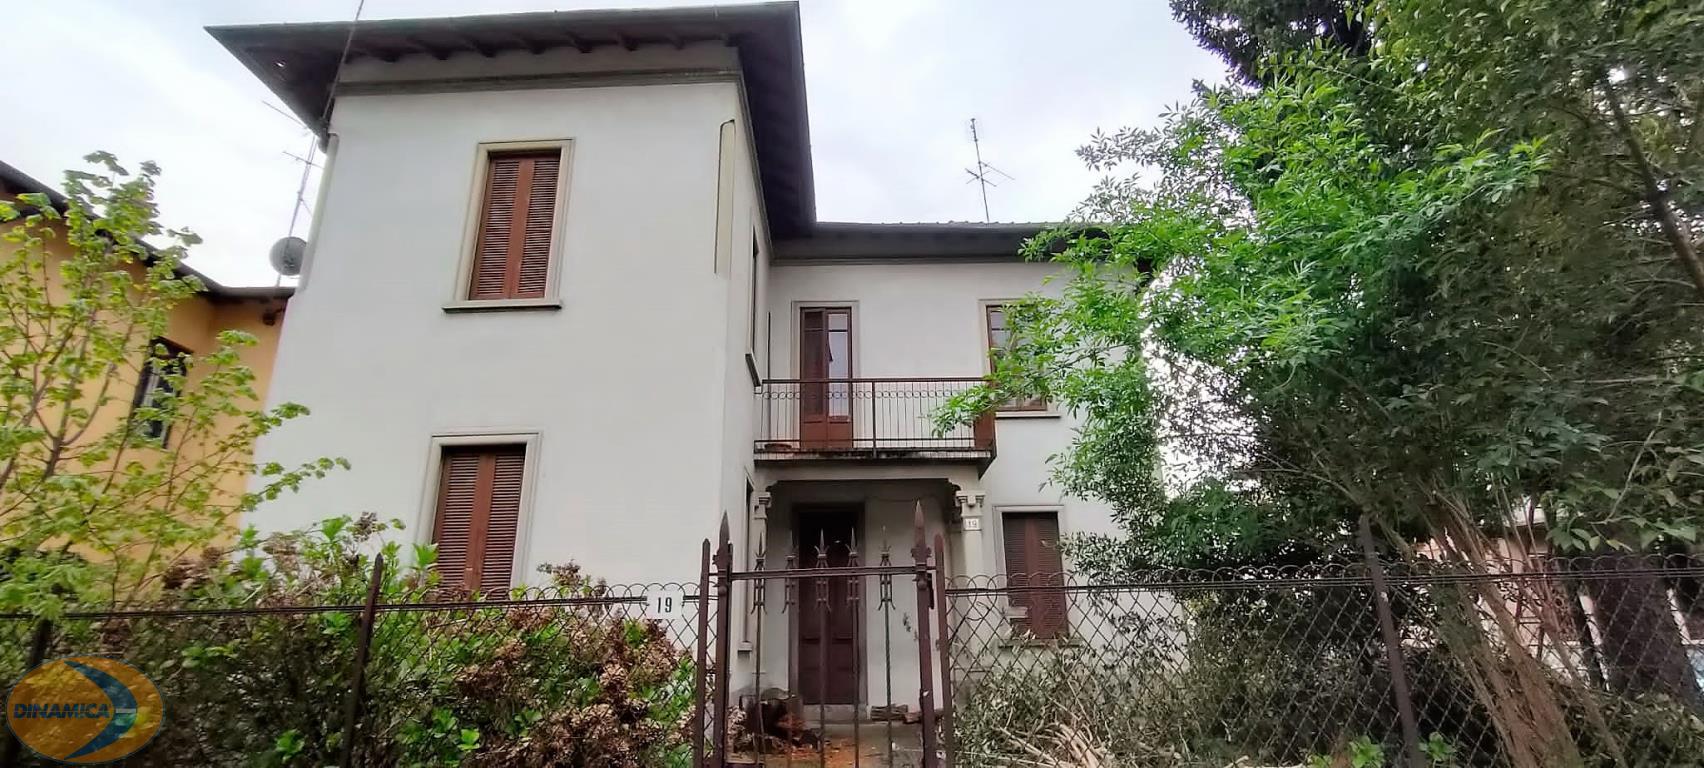 villa in Via G De Castillia a Vimercate